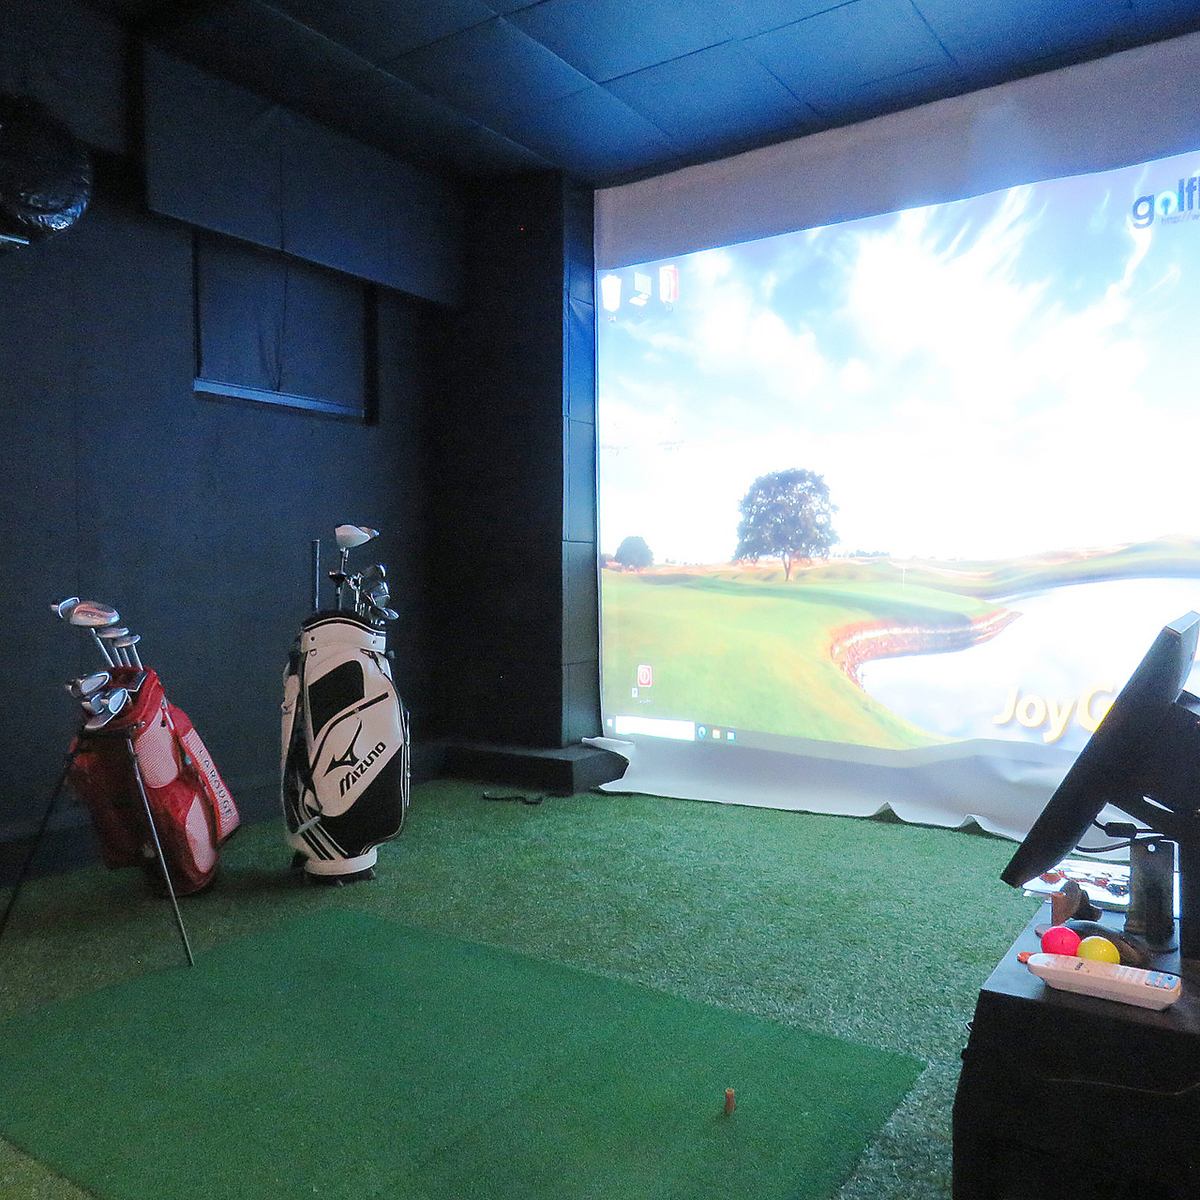 您想在下班回家的路上輕鬆地打一場模擬高爾夫嗎？